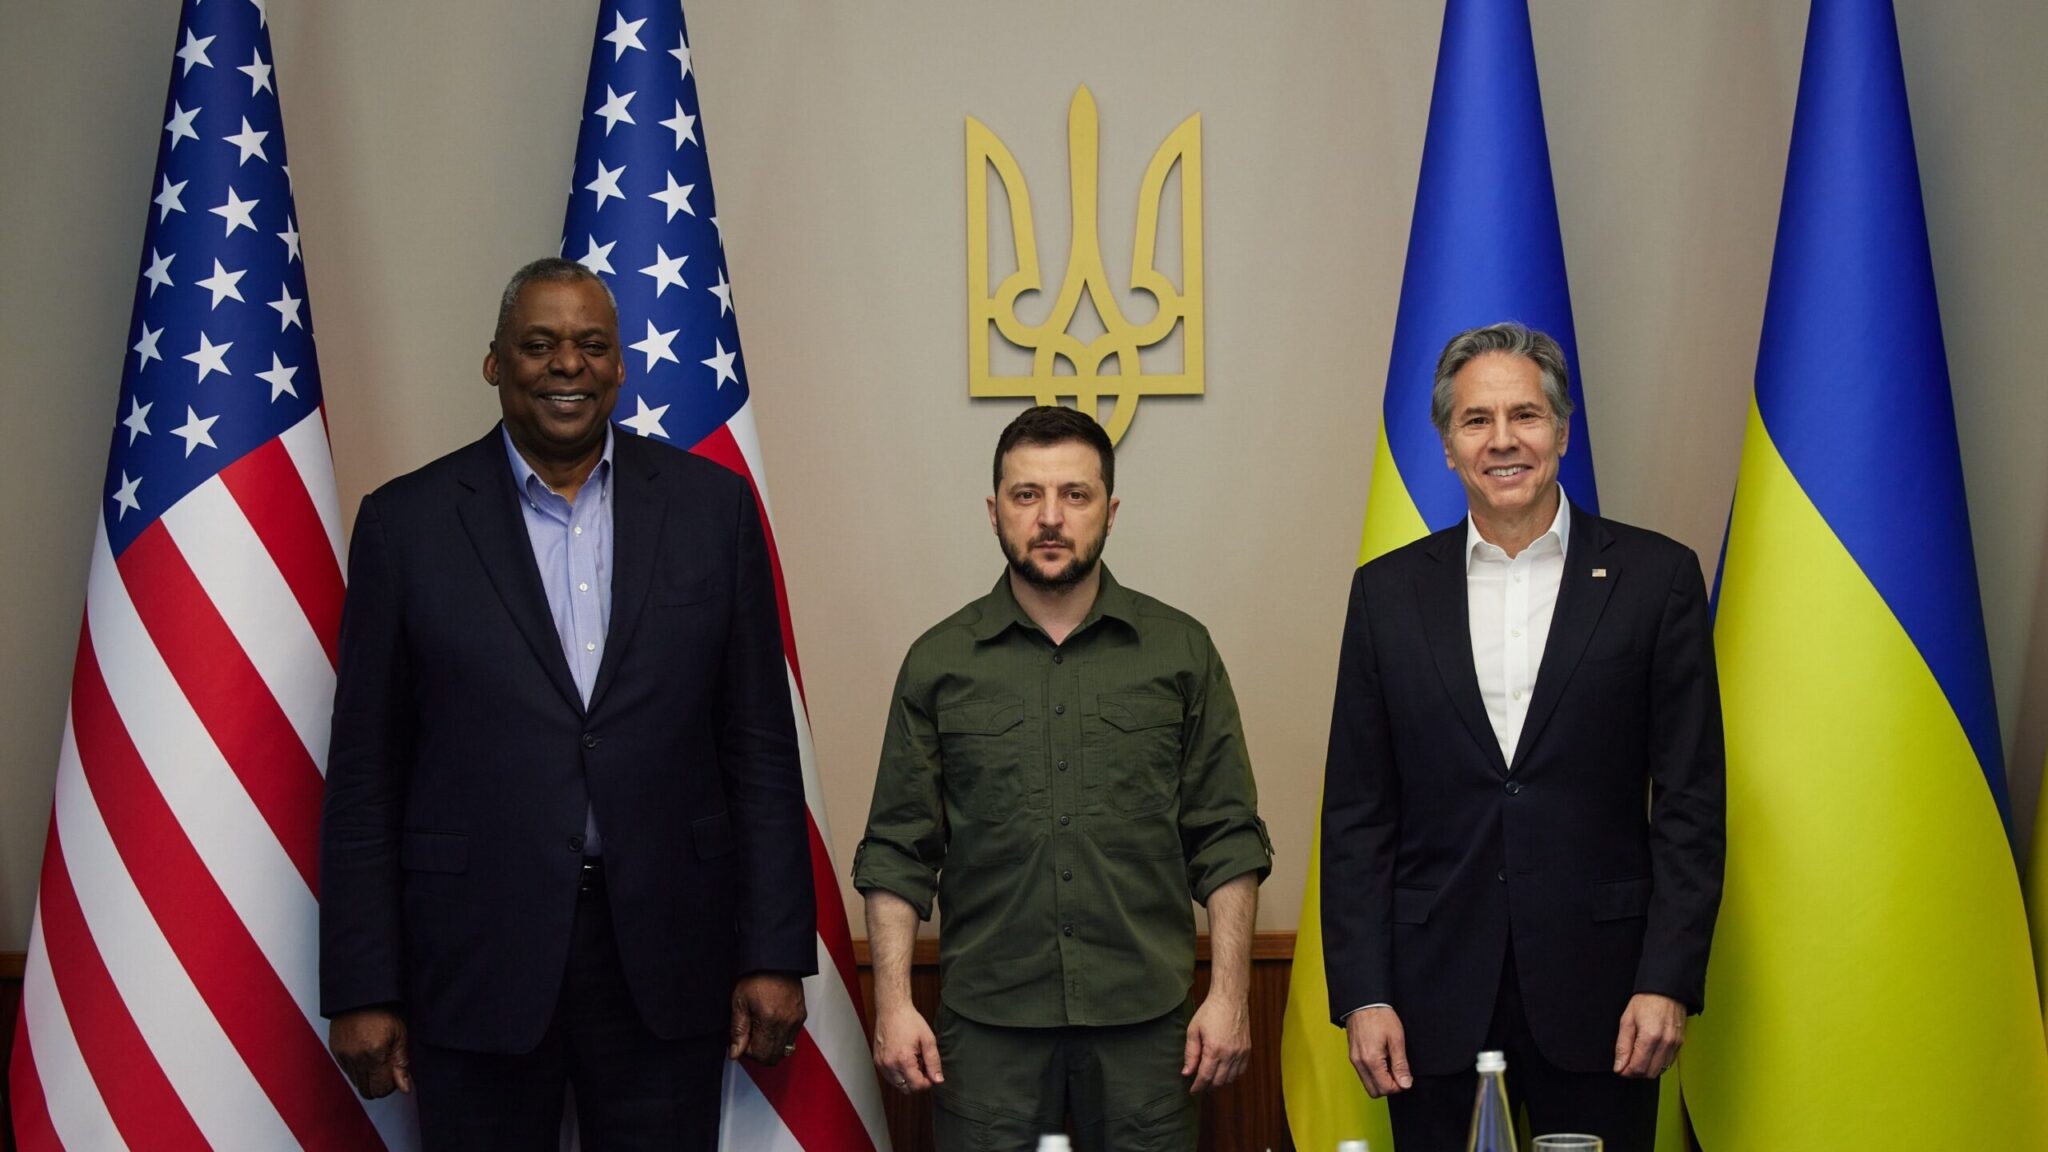 Tổng thống Ukraine Volodymyr Zelensky (C) gặp phái đoàn gồm Ngoại trưởng Hoa Kỳ Antony Blinken (phải) và Bộ trưởng Quốc phòng Hoa Kỳ Lloyd Austin vào ngày 24 tháng 4 năm 2022 tại Kyiv, Ukraine. (Văn phòng Báo chí Tổng thống Ukraine qua Getty Images)